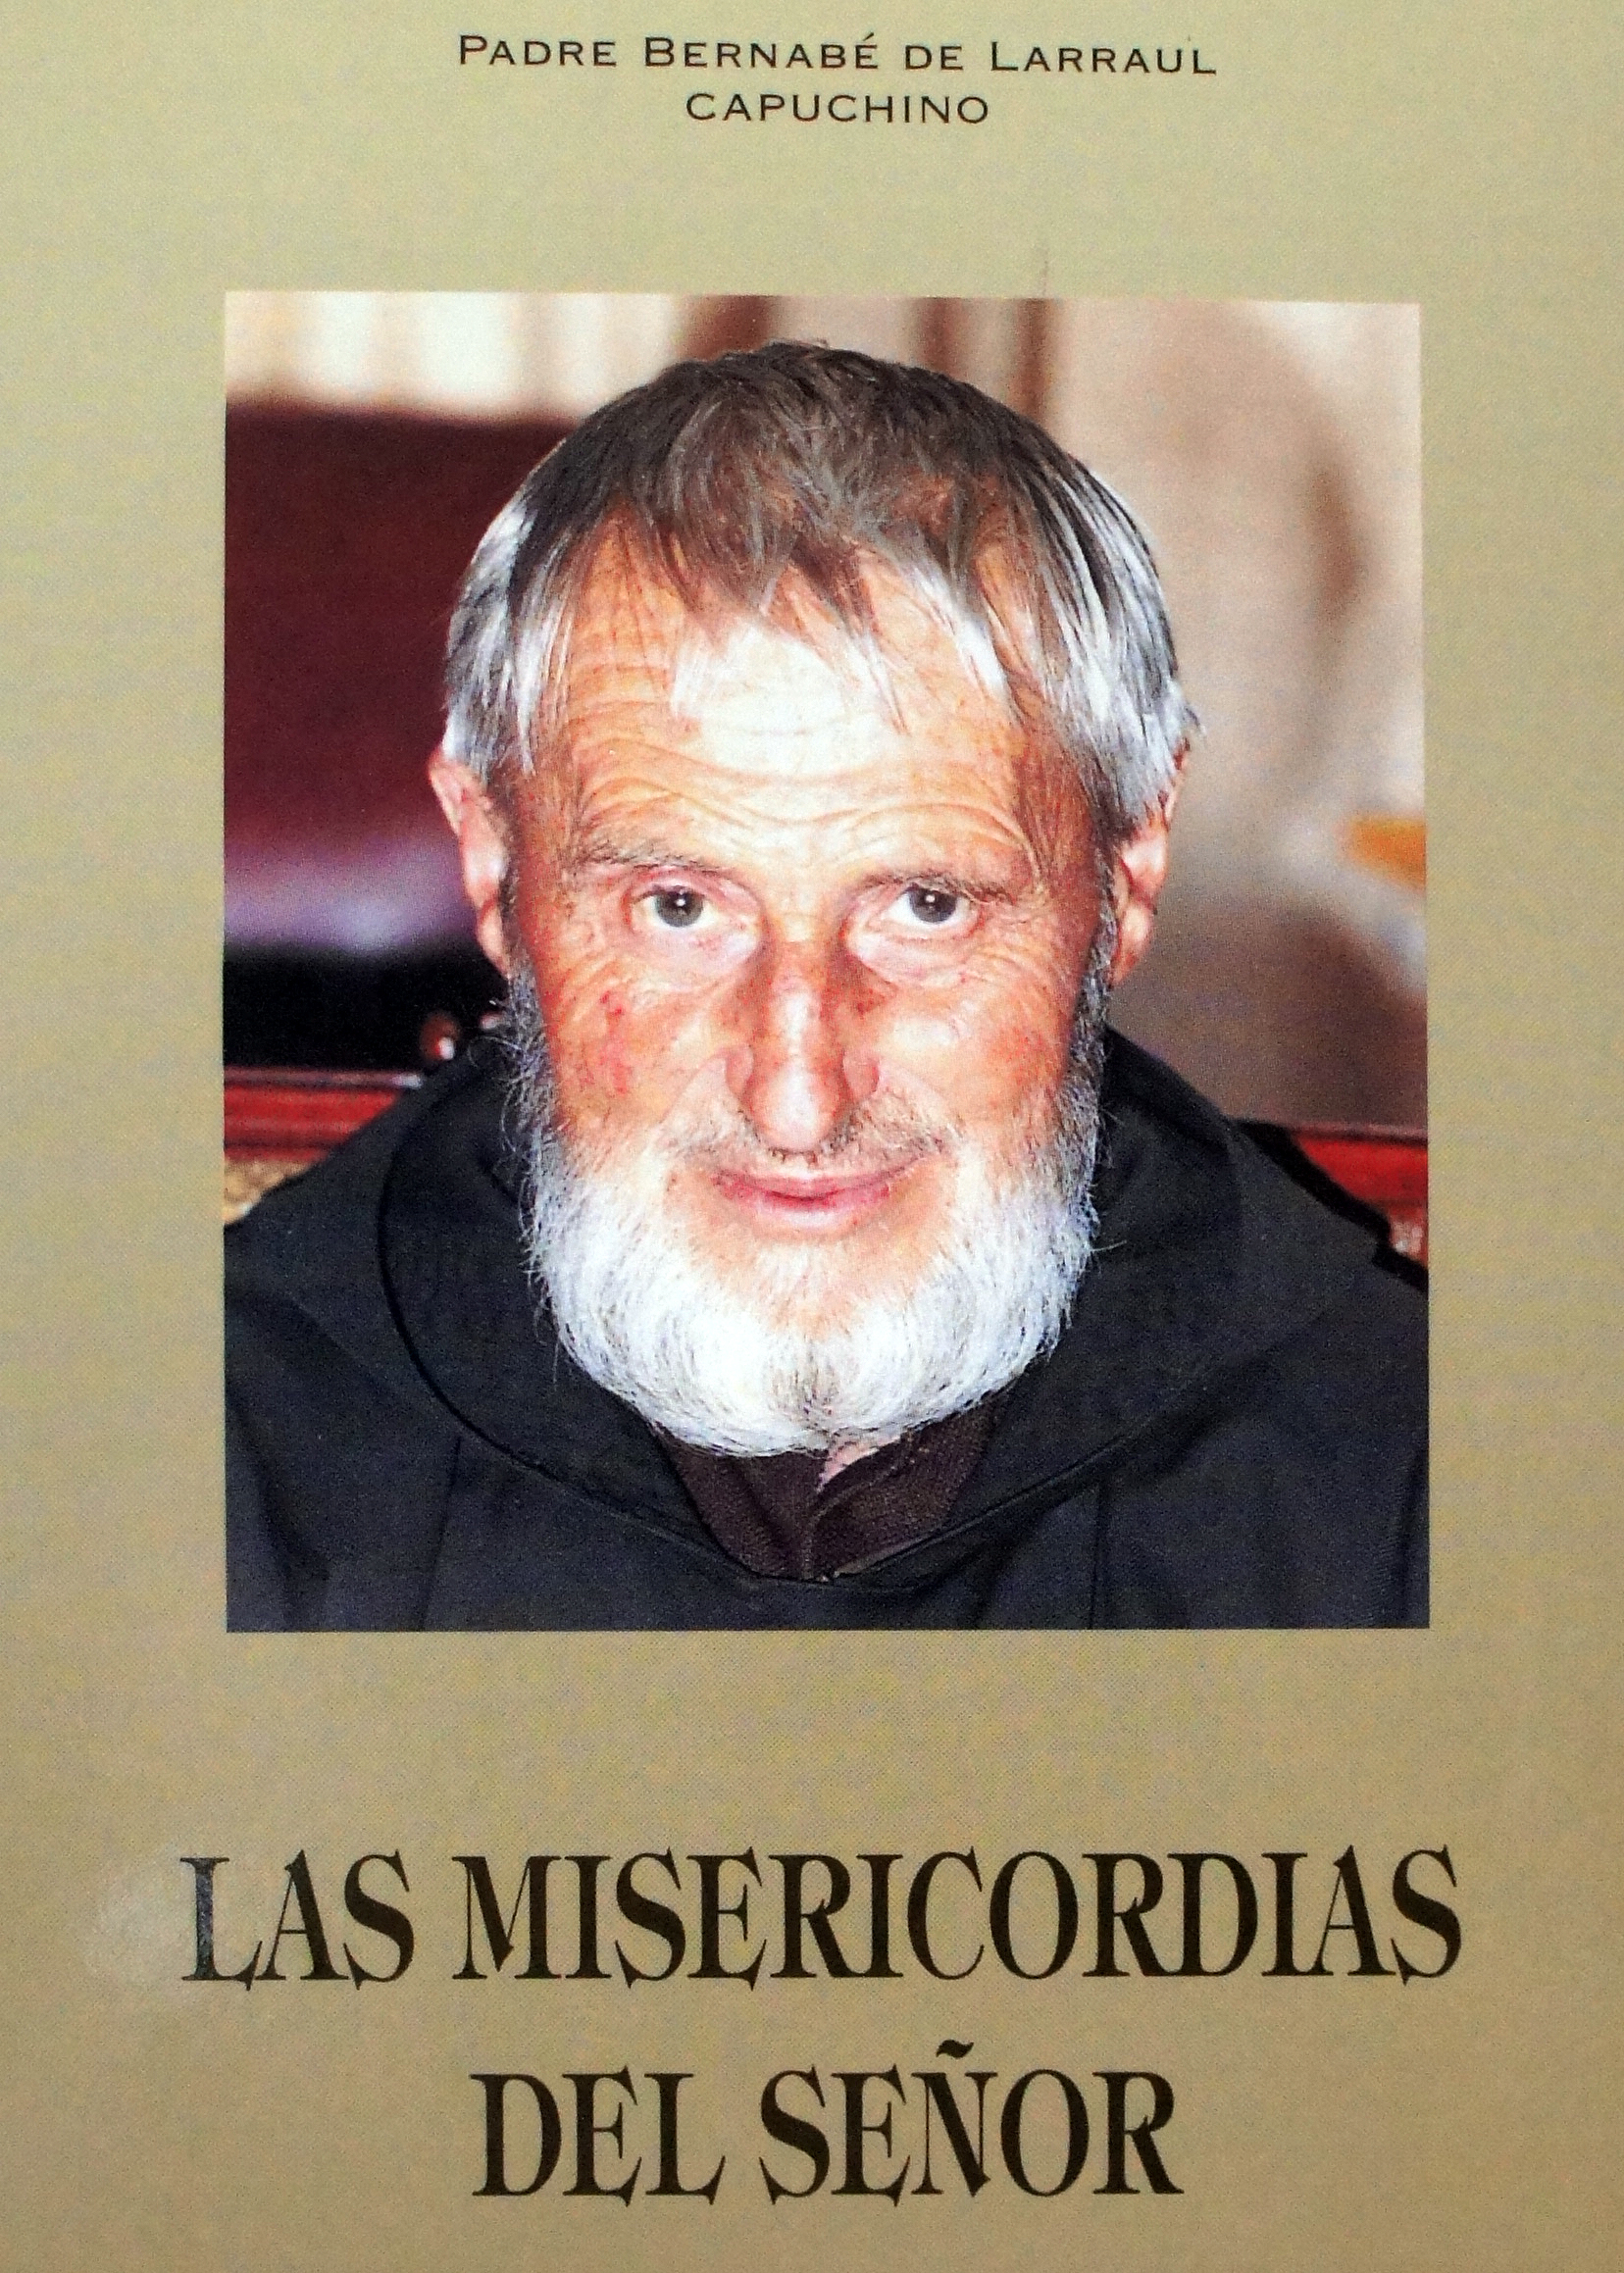 Las Misericordias del Señor. Autobiografía del Padre Bernabé de Larraul, capuchino